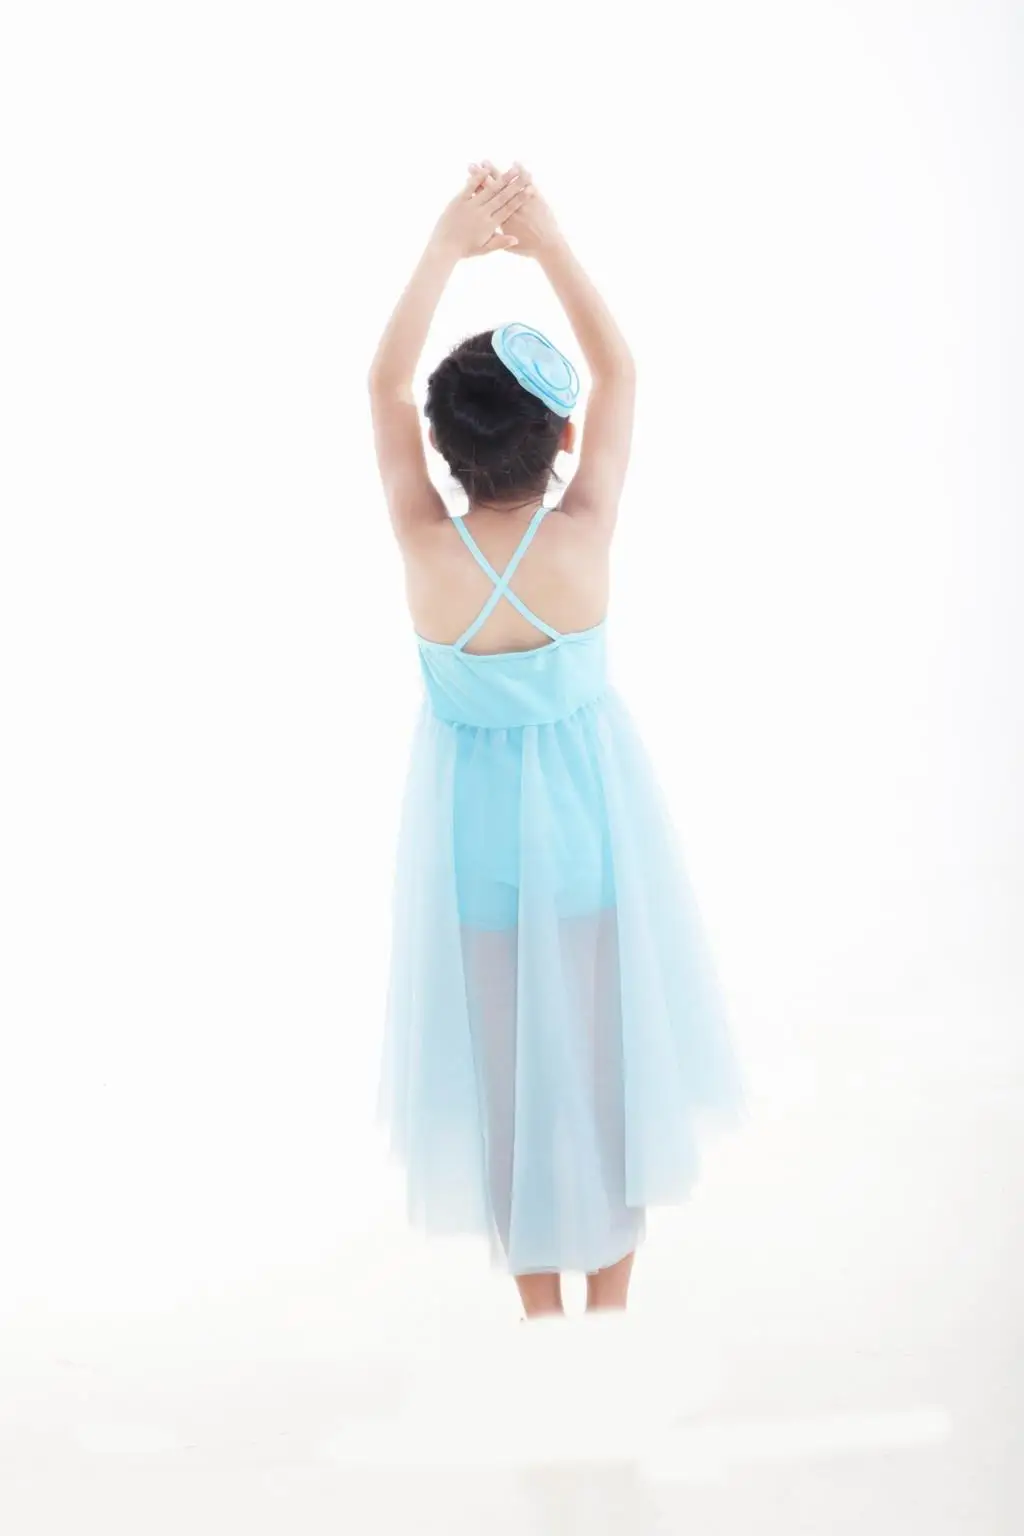 Балетная юбка-пачка, детская юбка-пачка на осень/зиму, длинный рукав для танцев, платье и одежда для тренировок, Детский костюм